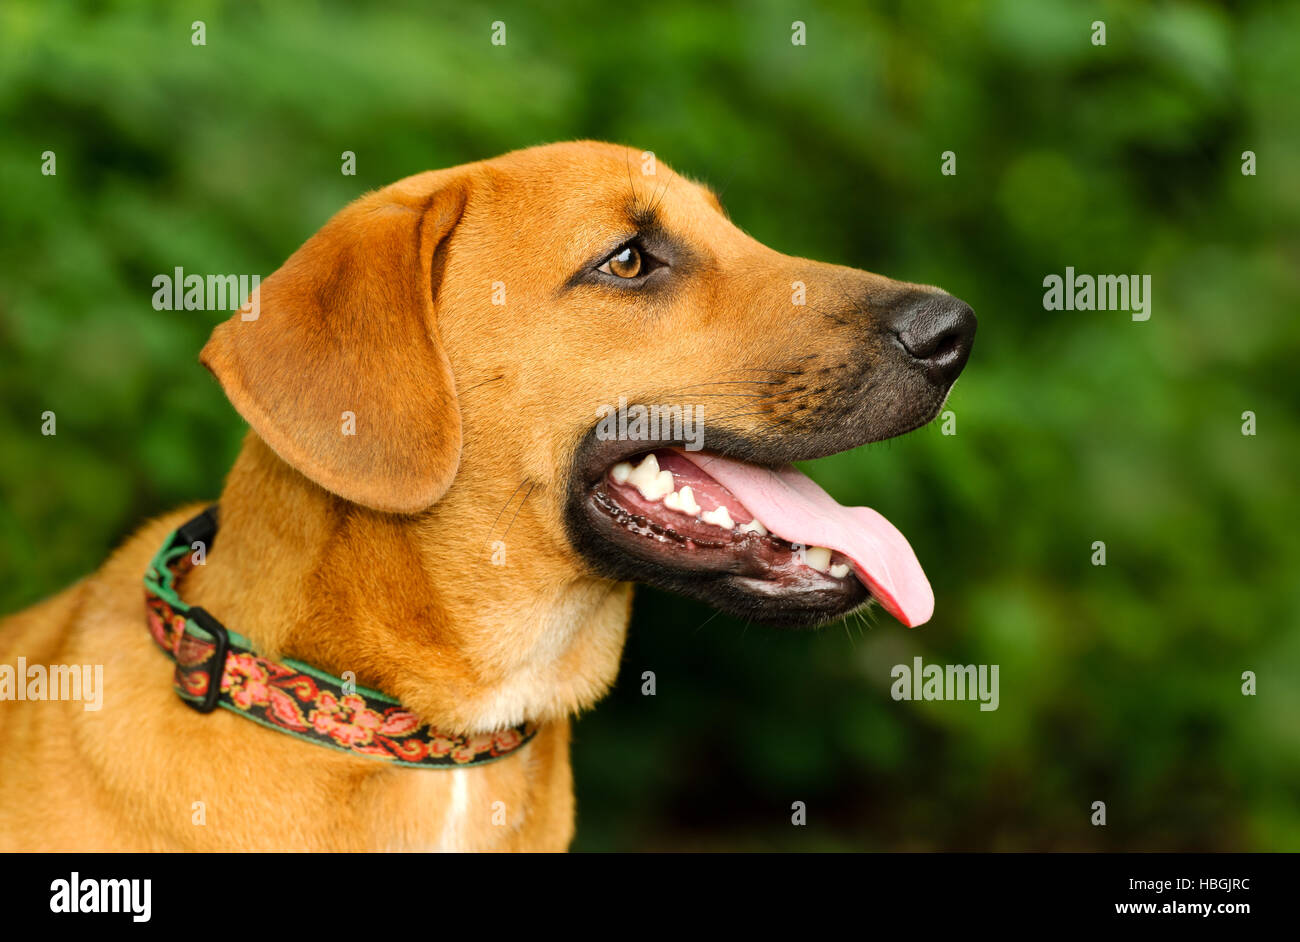 Chien heureux est un gros plan d'un grand chien chiot excité avec sa langue sortir de sa bouche et une bonne expression sur son visage. Banque D'Images